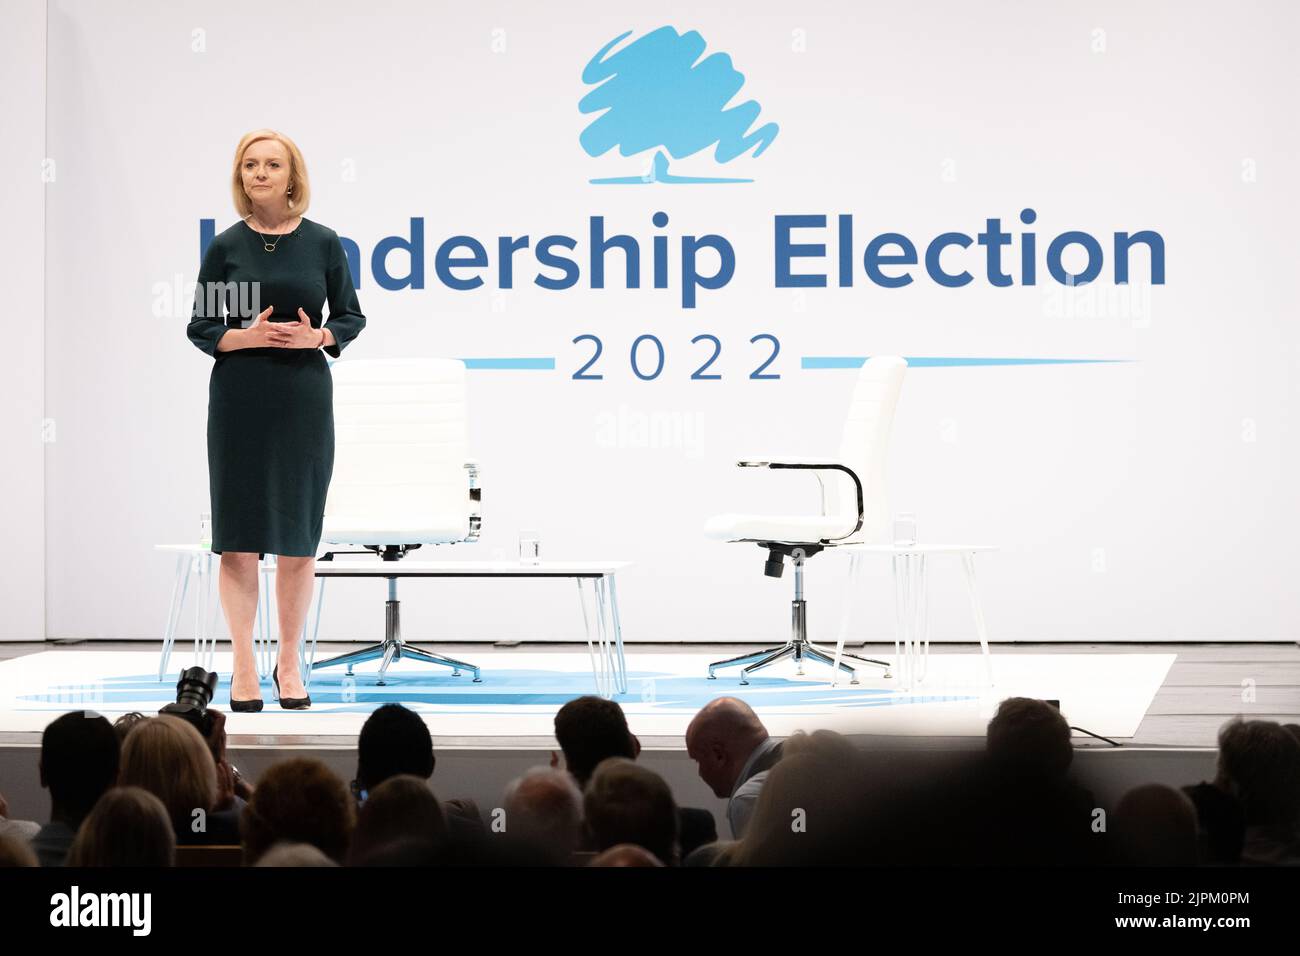 Liz Truss parla alle marchette elettorali della leadership conservatrice a Perth 16 agosto 2022 - Perth, Scozia, Regno Unito Foto Stock